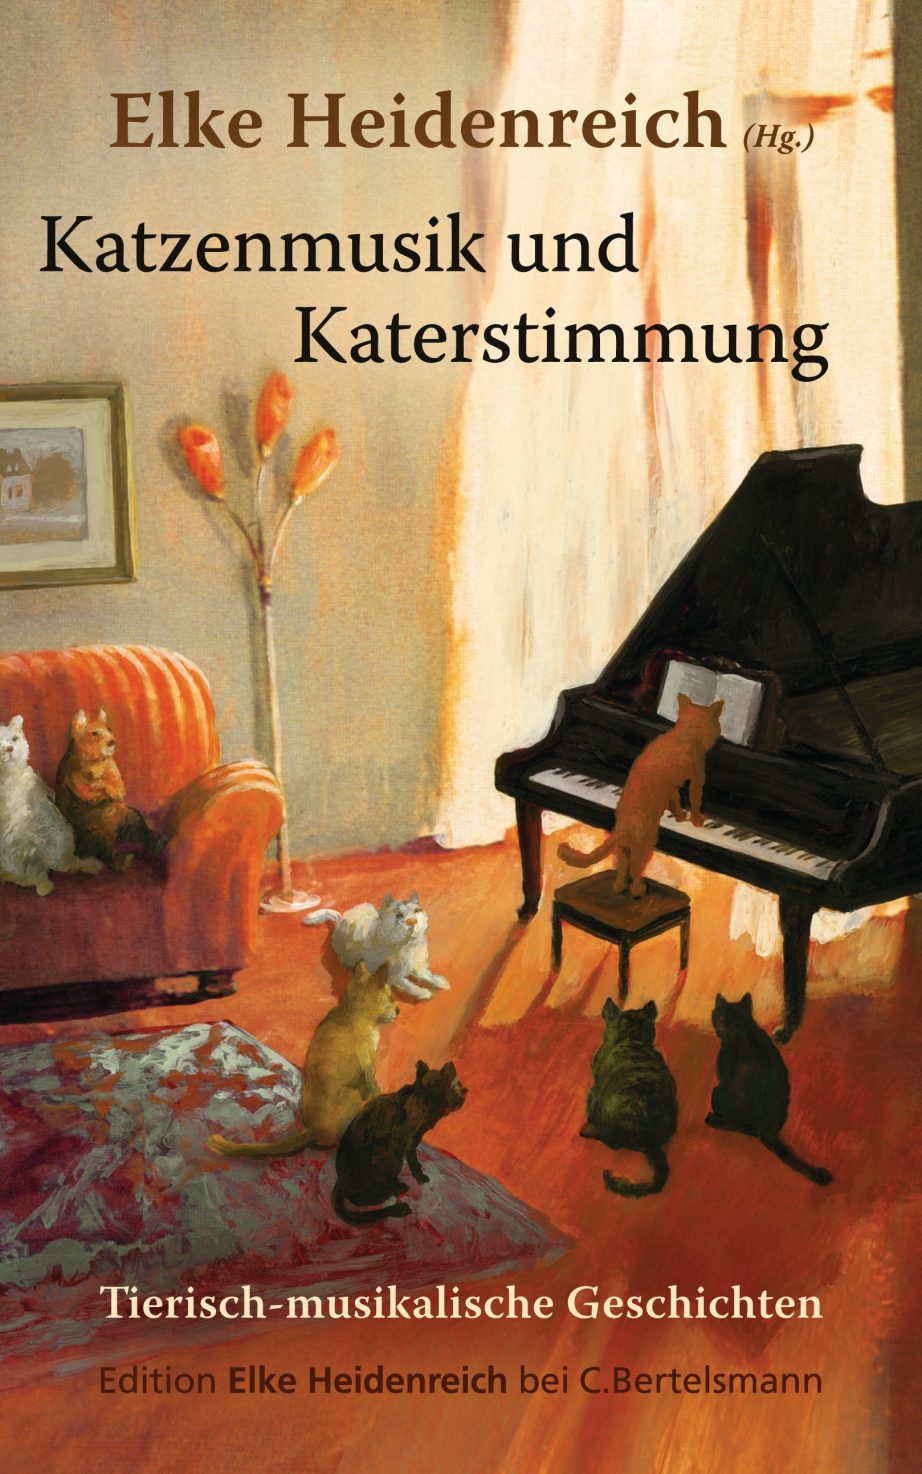 Elke Heidenreich (Hg.): Katzenmusik und Katerstimmung